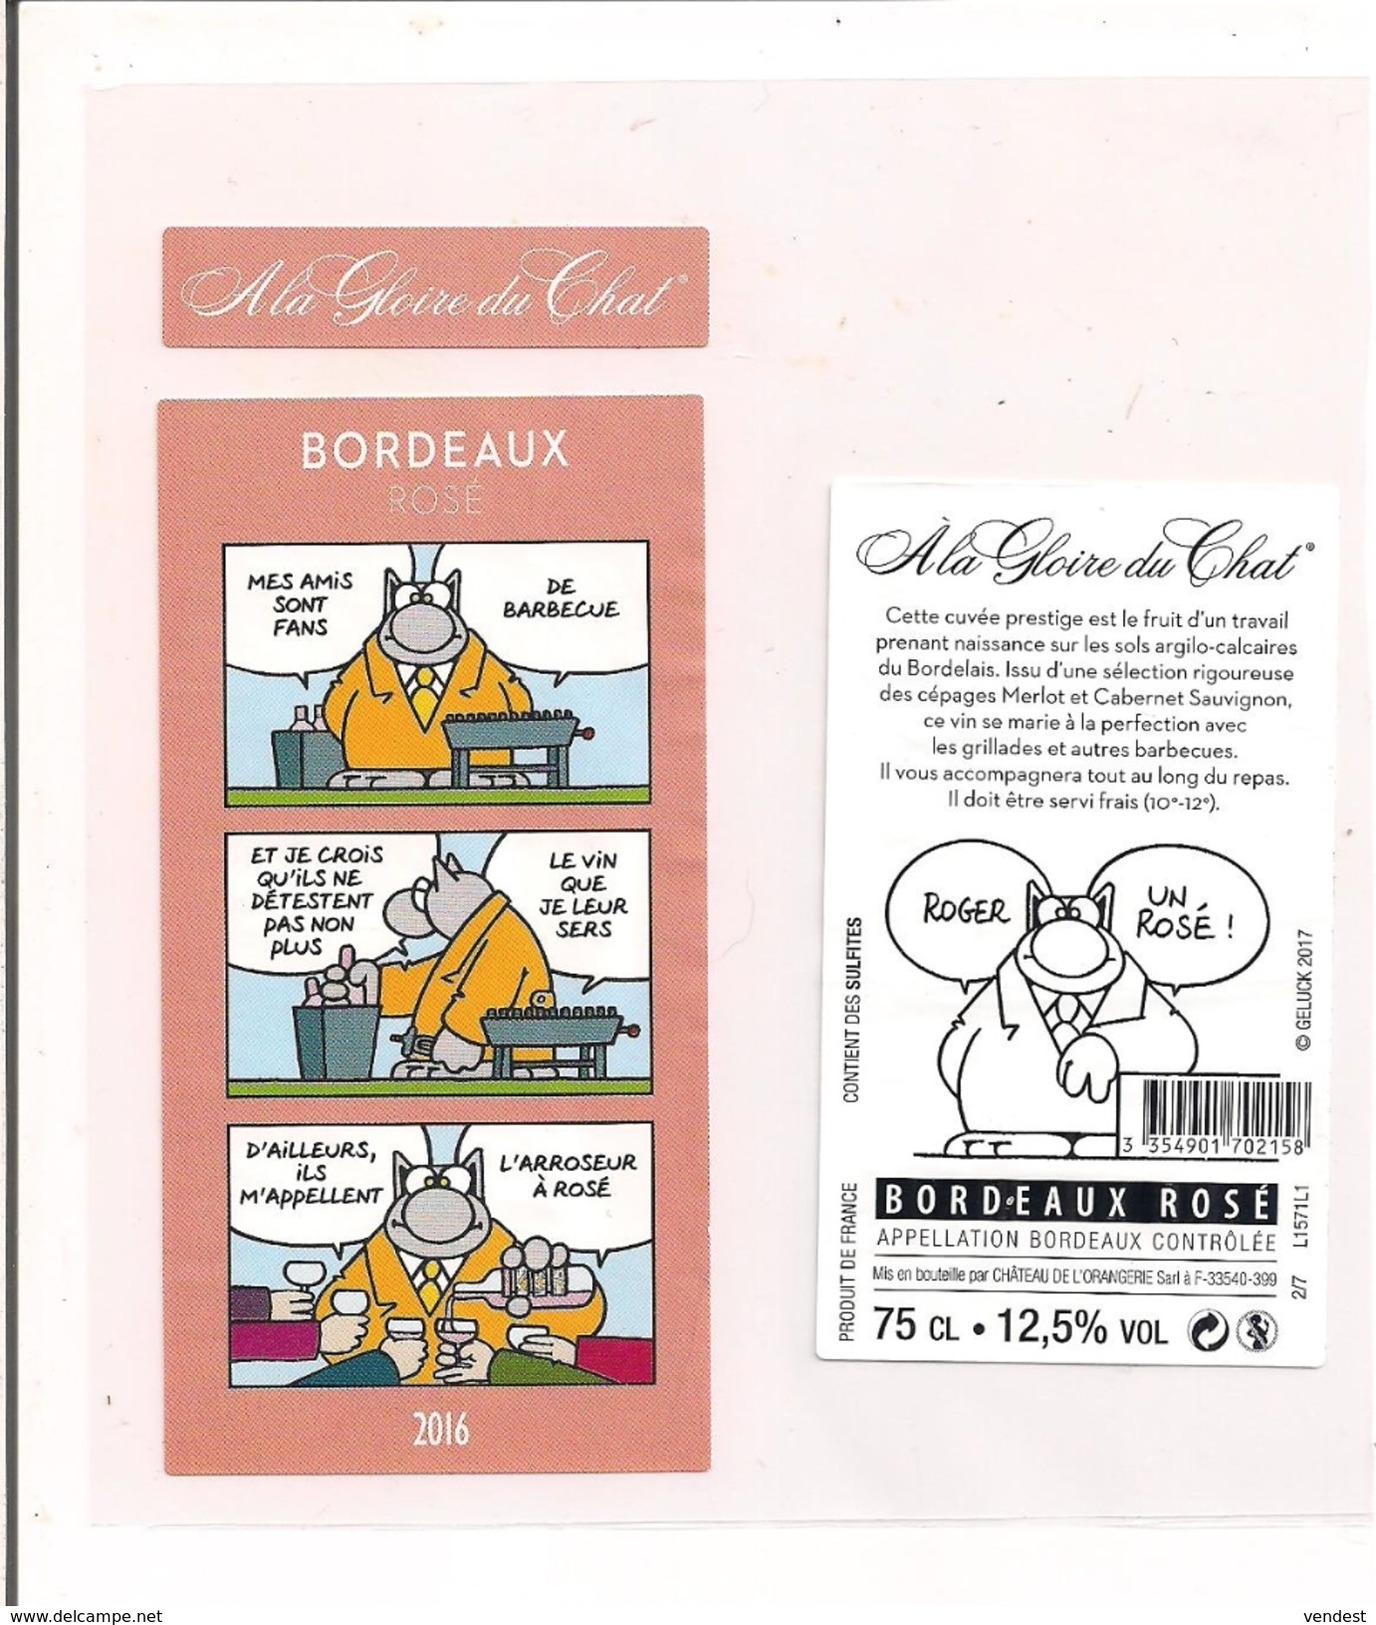 Etiquette Décollée " A La Gloire Du Chat " - Geluck - Bordeaux Rosé 2016 -" L'arroseur à Rosé "- Château De L'Orangerie - Bordeaux